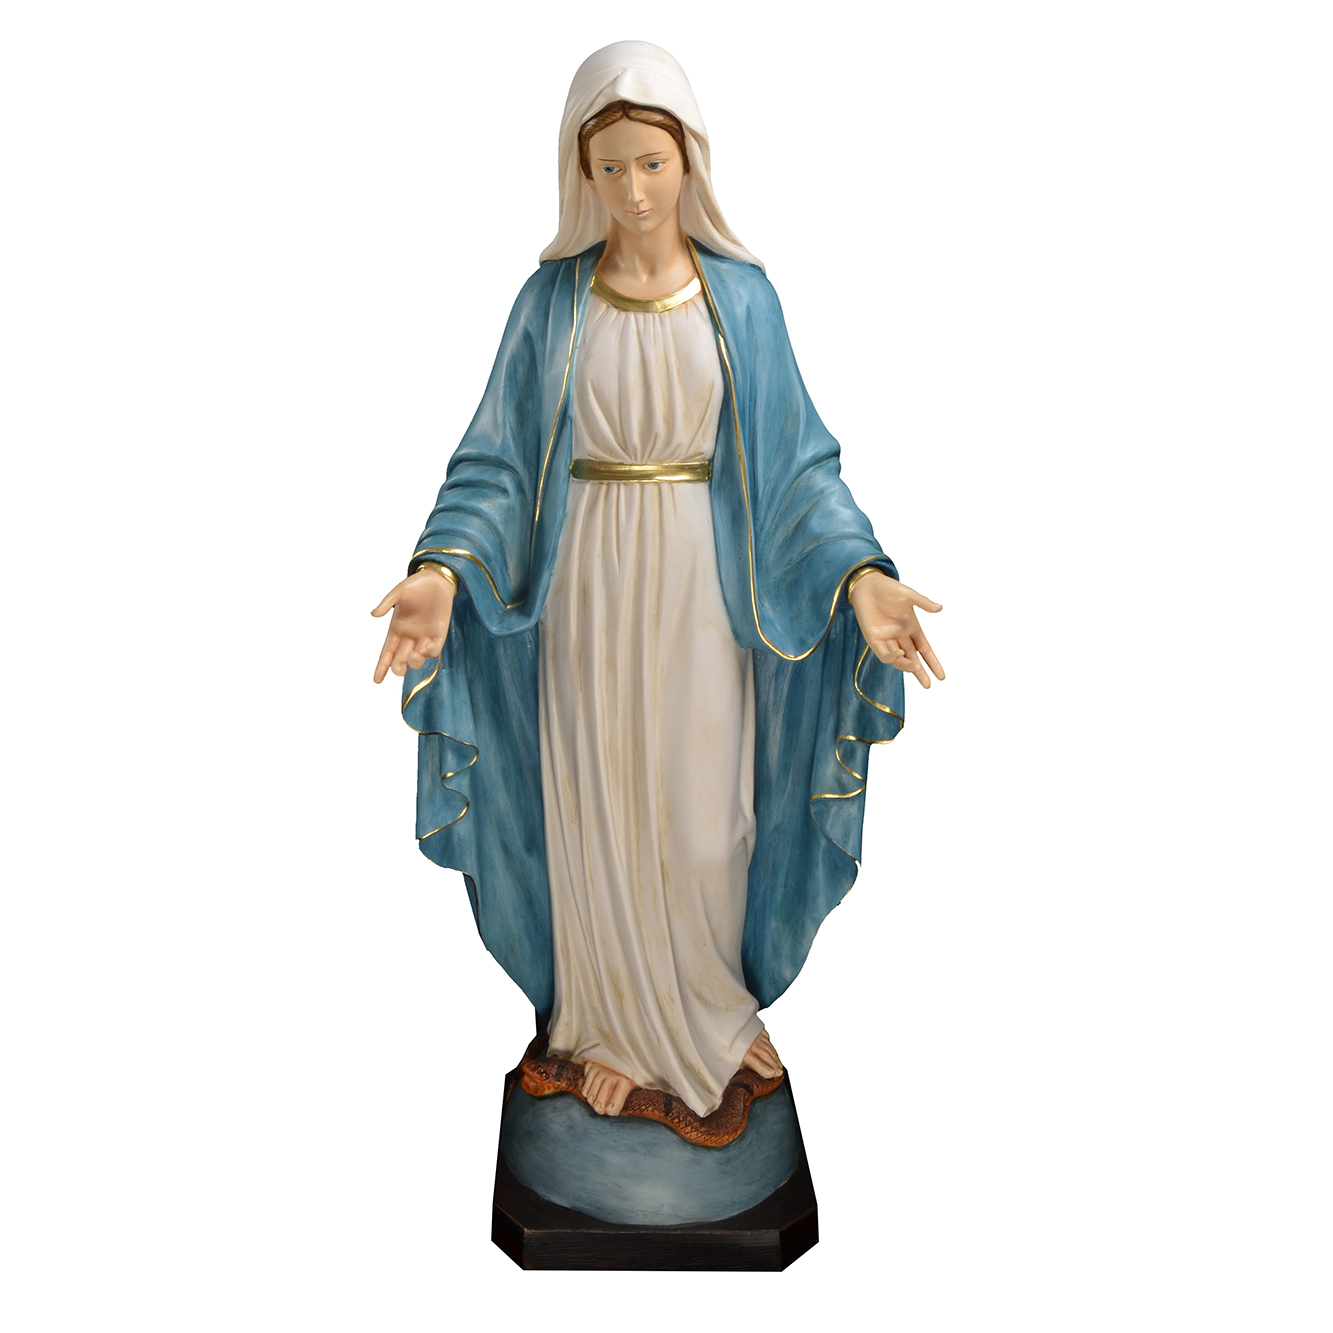 La Madonna di Lourdes, una storia di devozione Lourdes, visita ai luoghi della fede